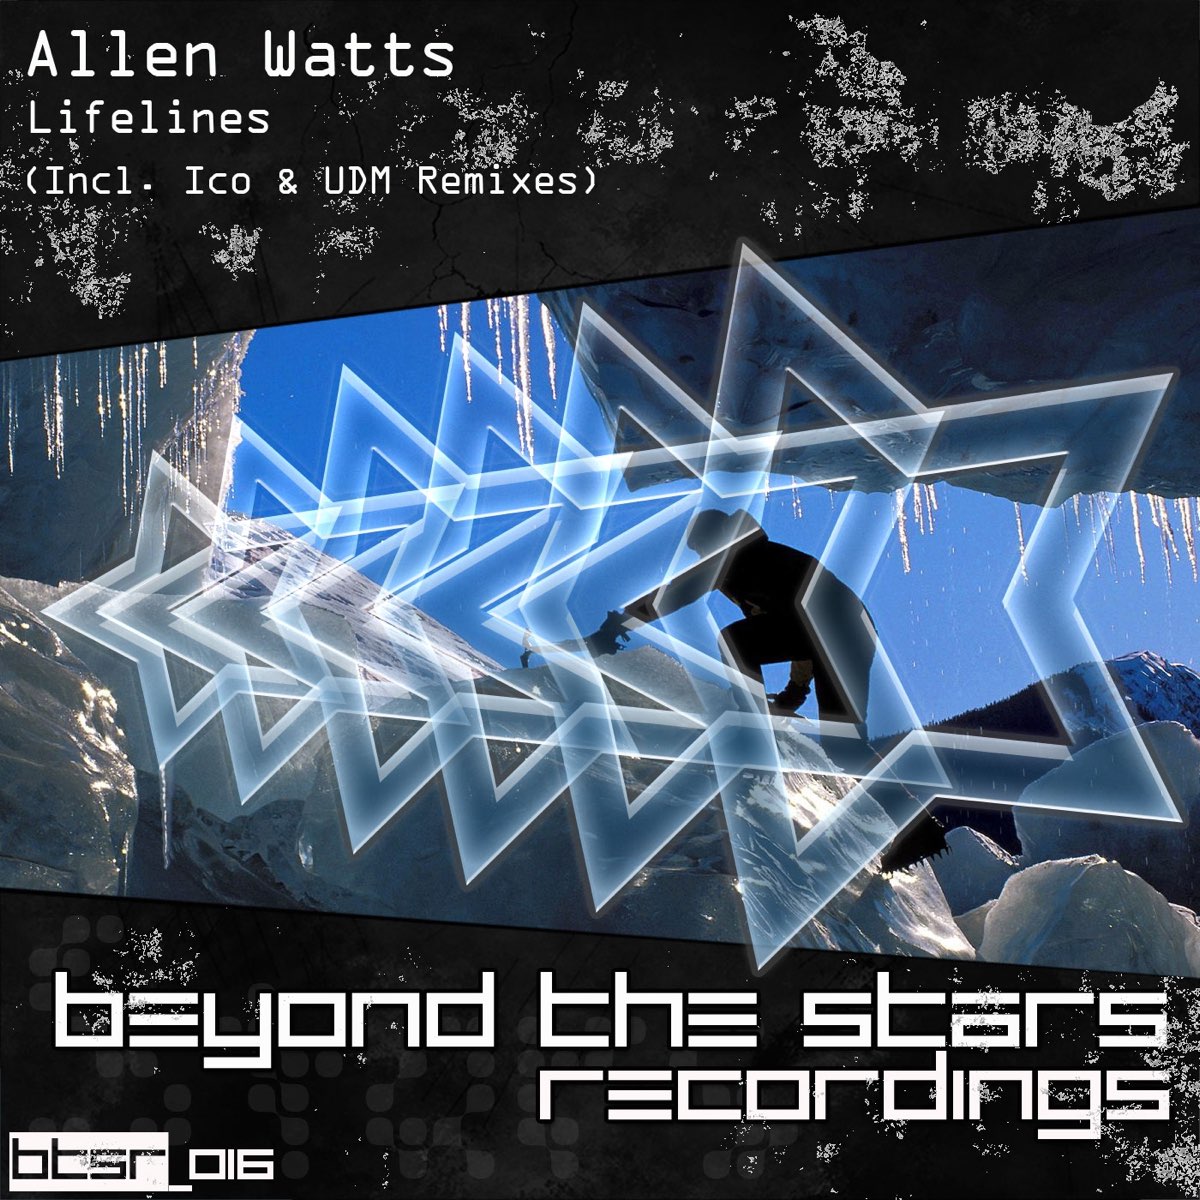 Lifelines (ICO Remix) Allen Watts. Allen Watts Uplifting Trance. Фото альбома Lifelines. Allen Watts выступления на шоу. Allen watts